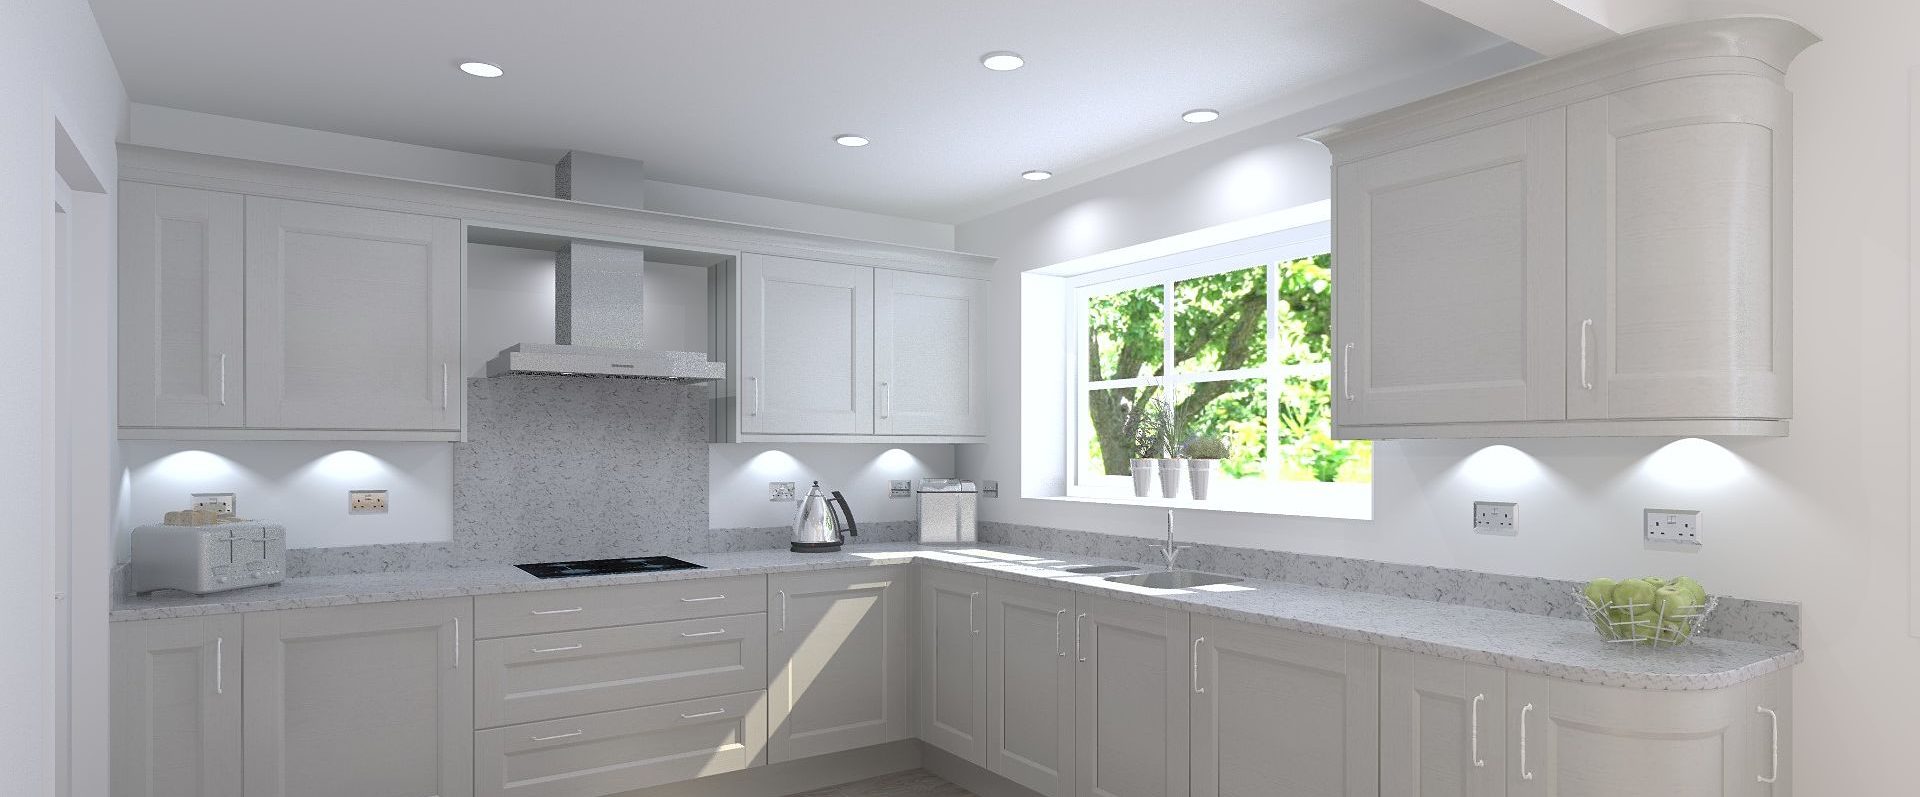 3D kitchen design